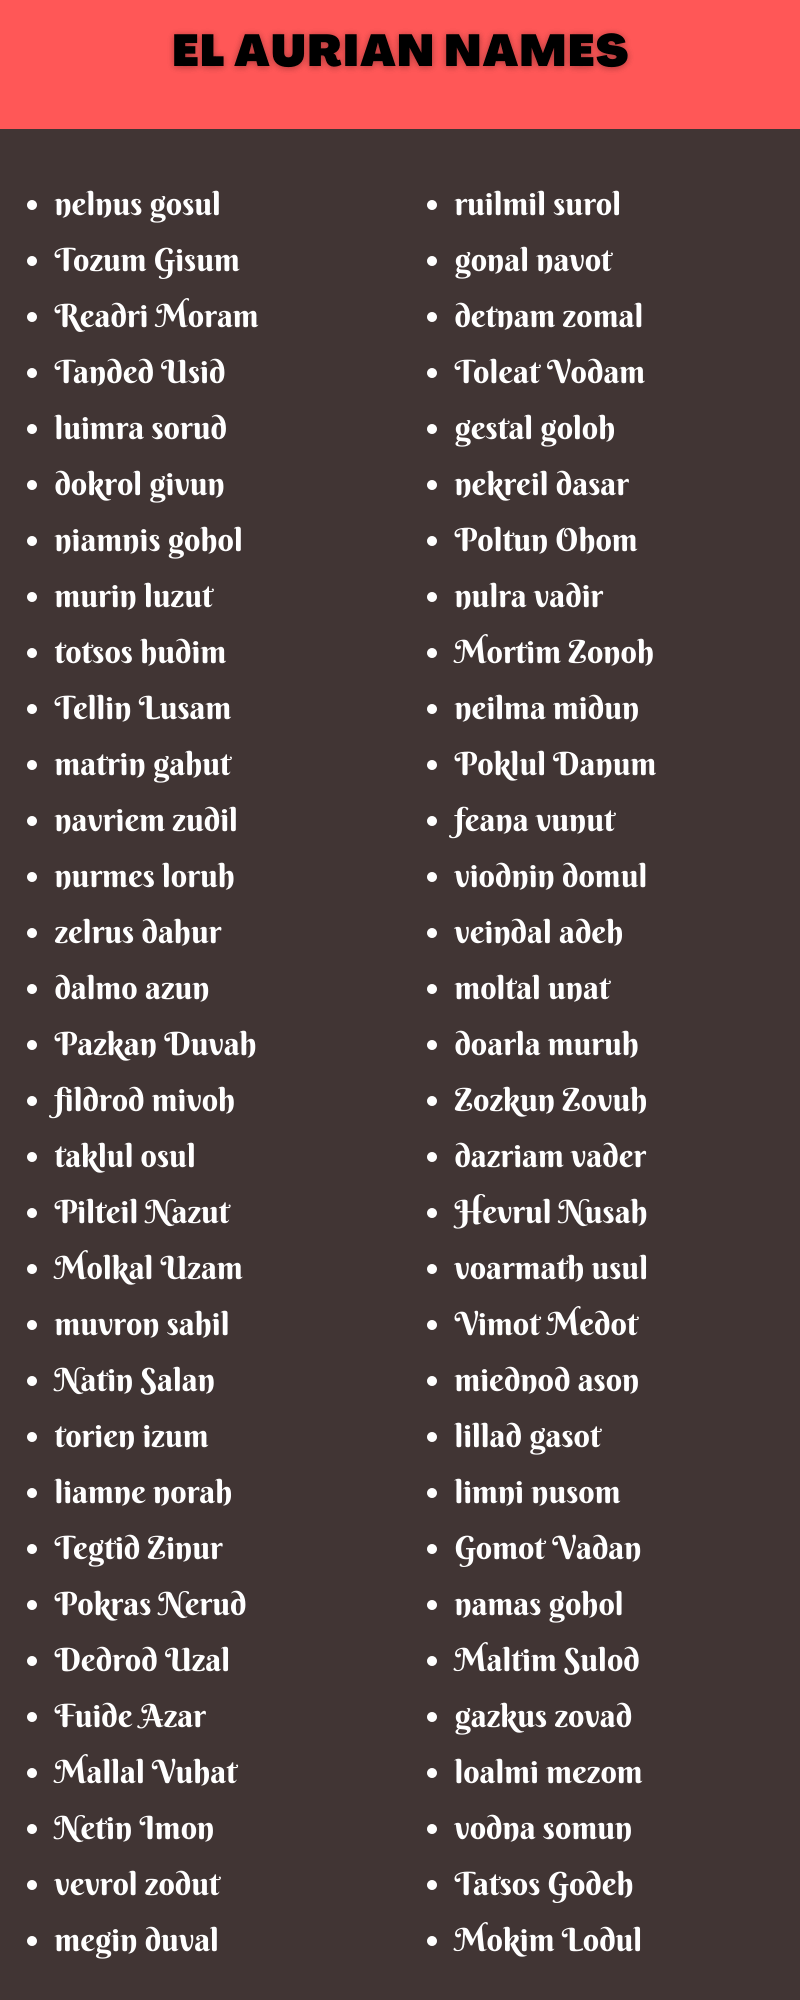 El Aurian Names